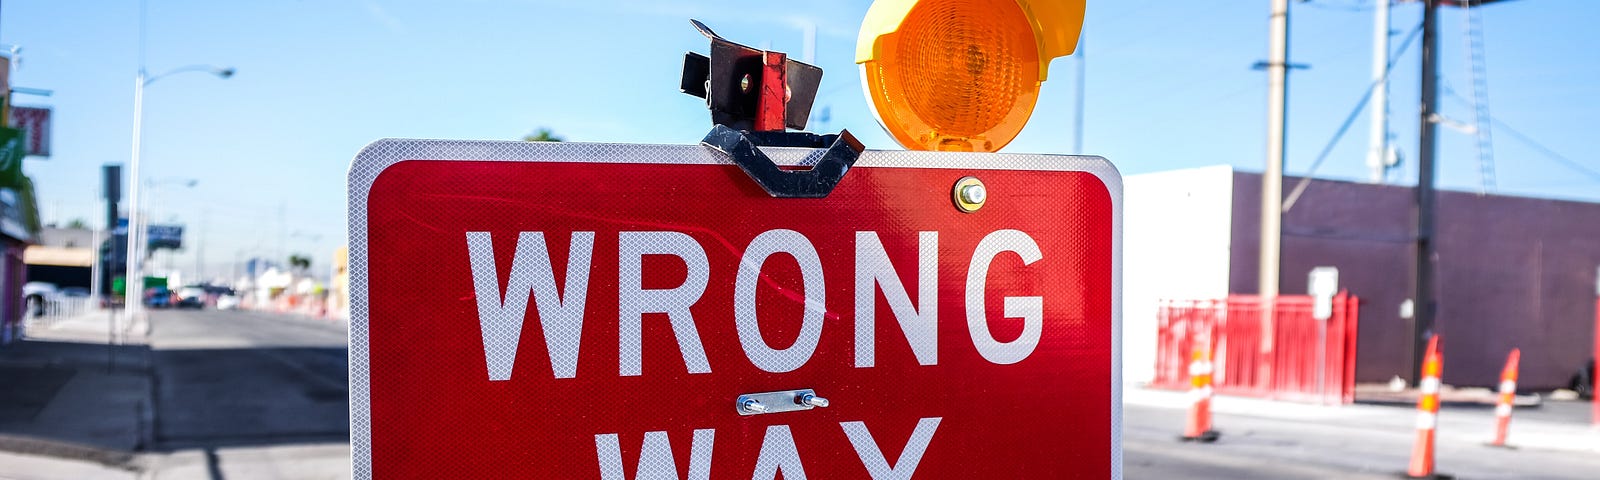 A wrong way sign.